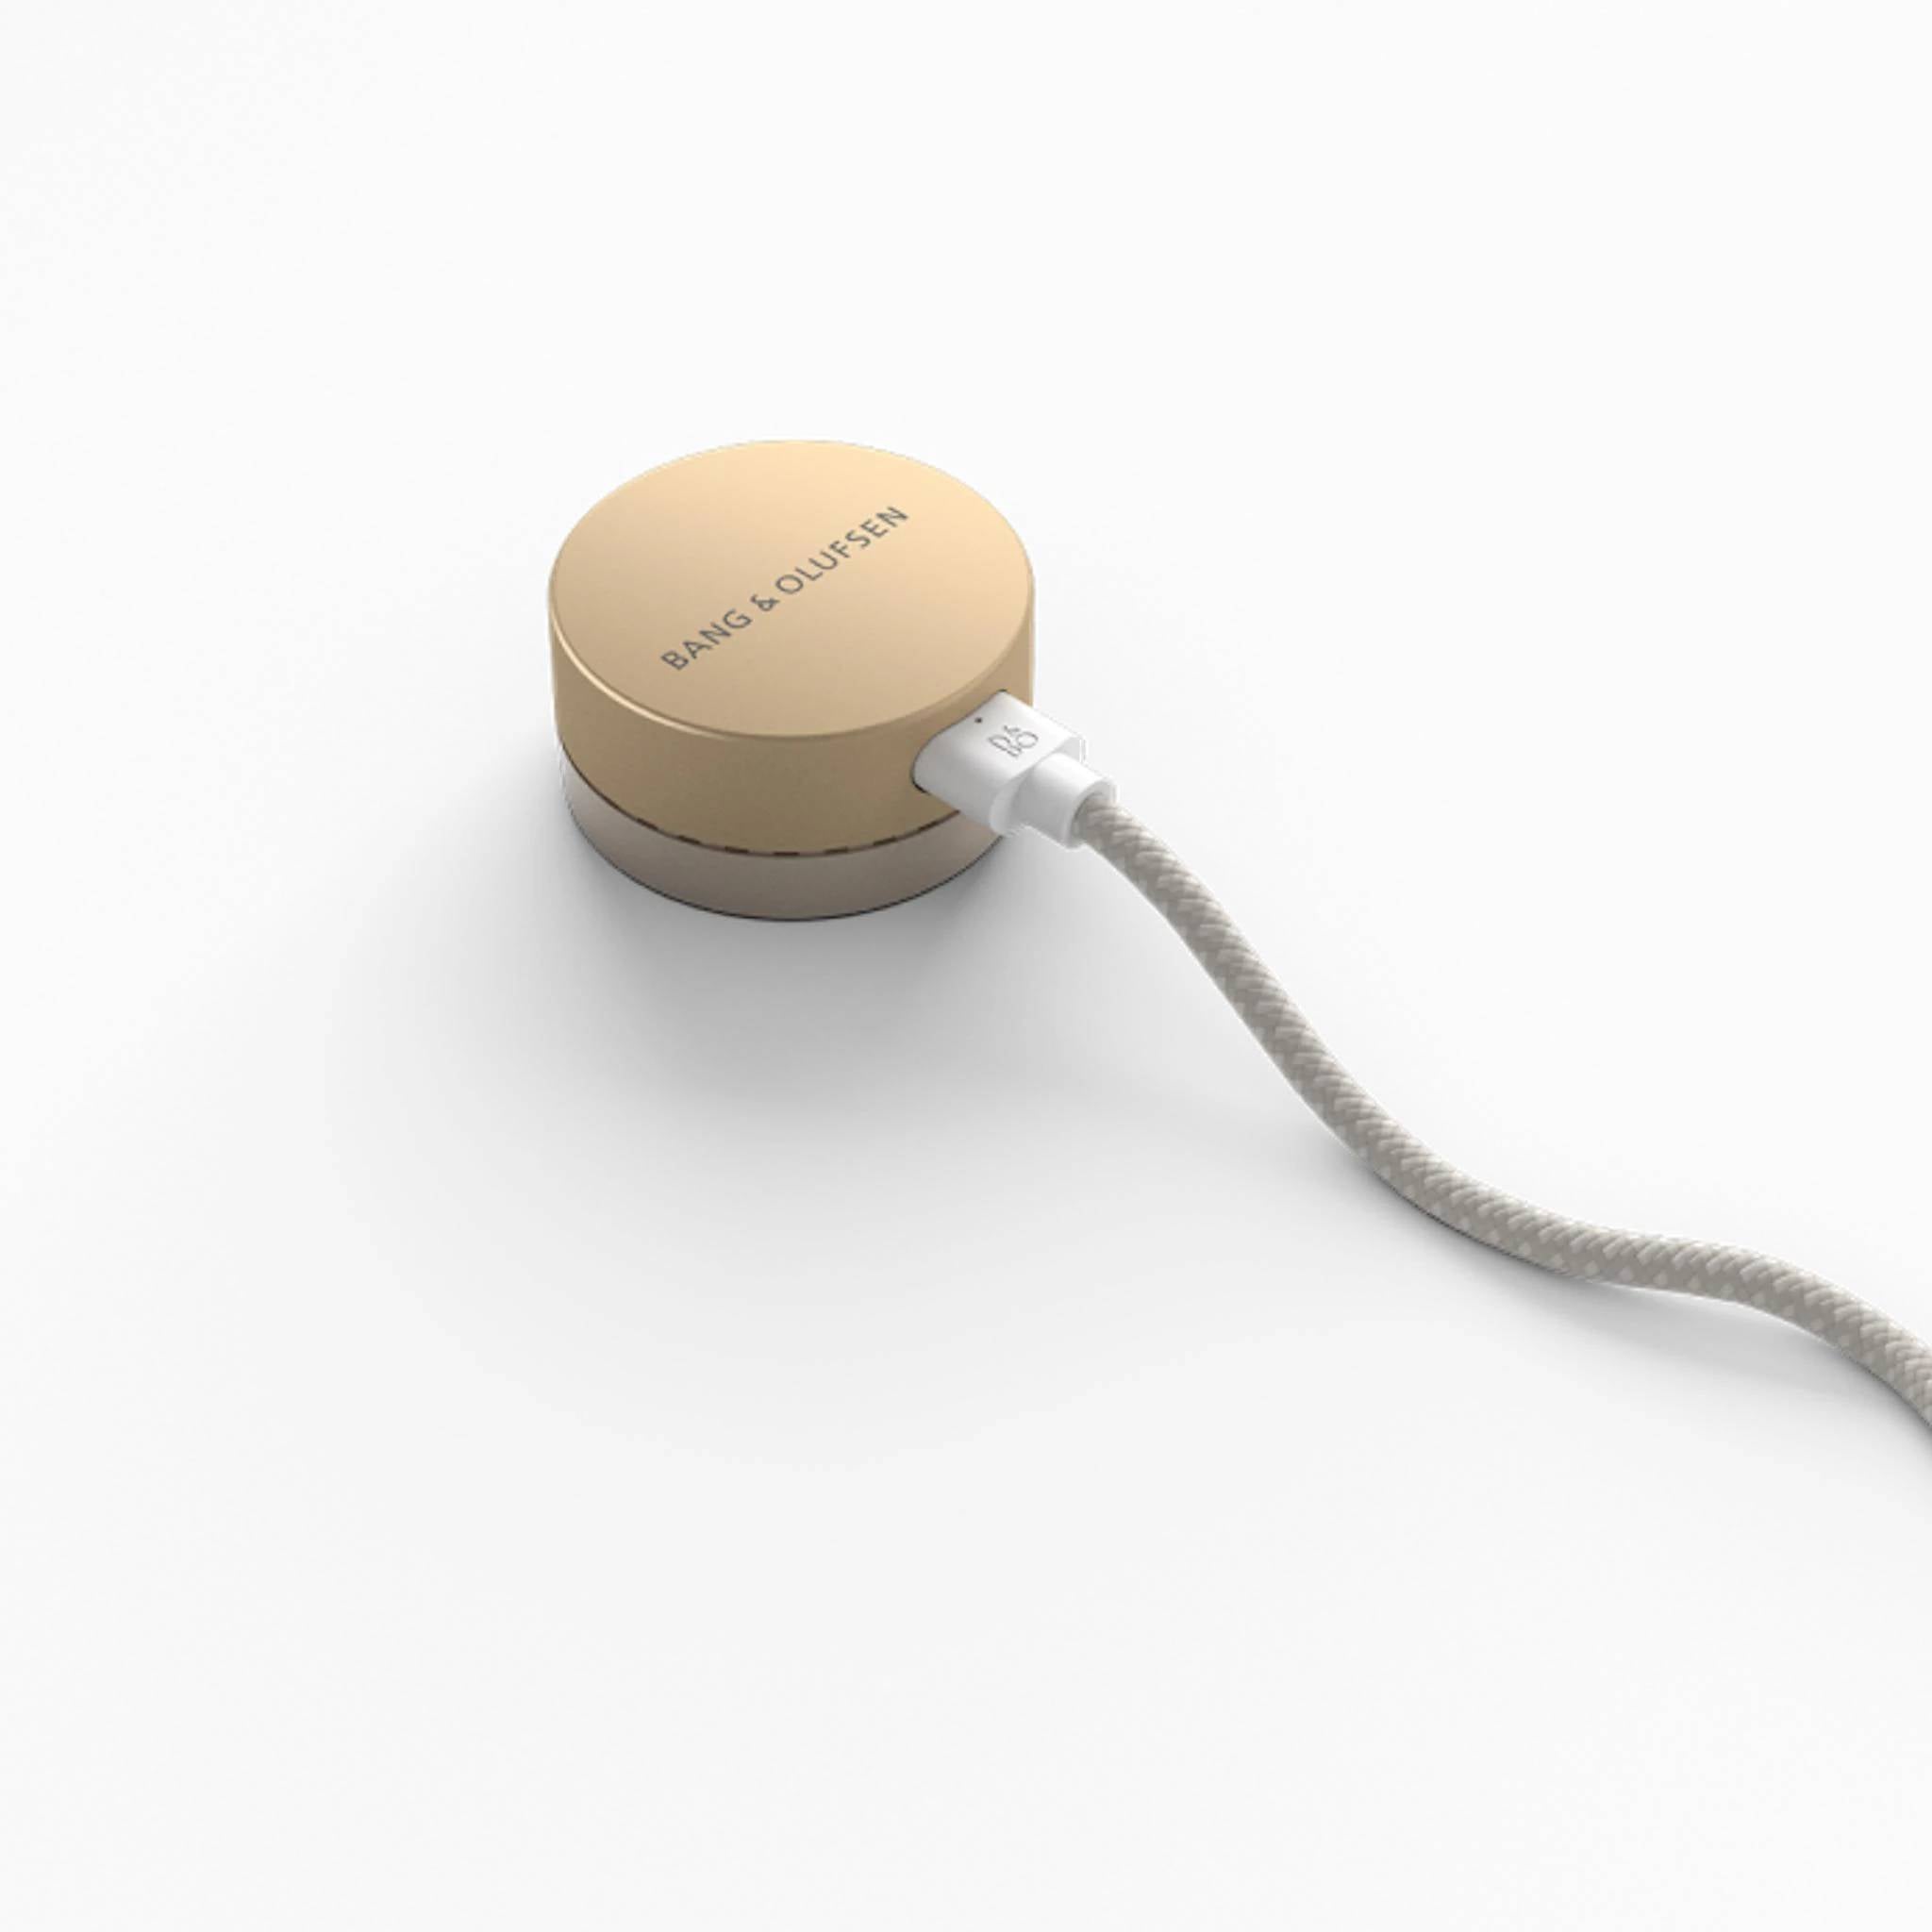 Bang & Olufsen Beosound Level Portable WiFi Speaker